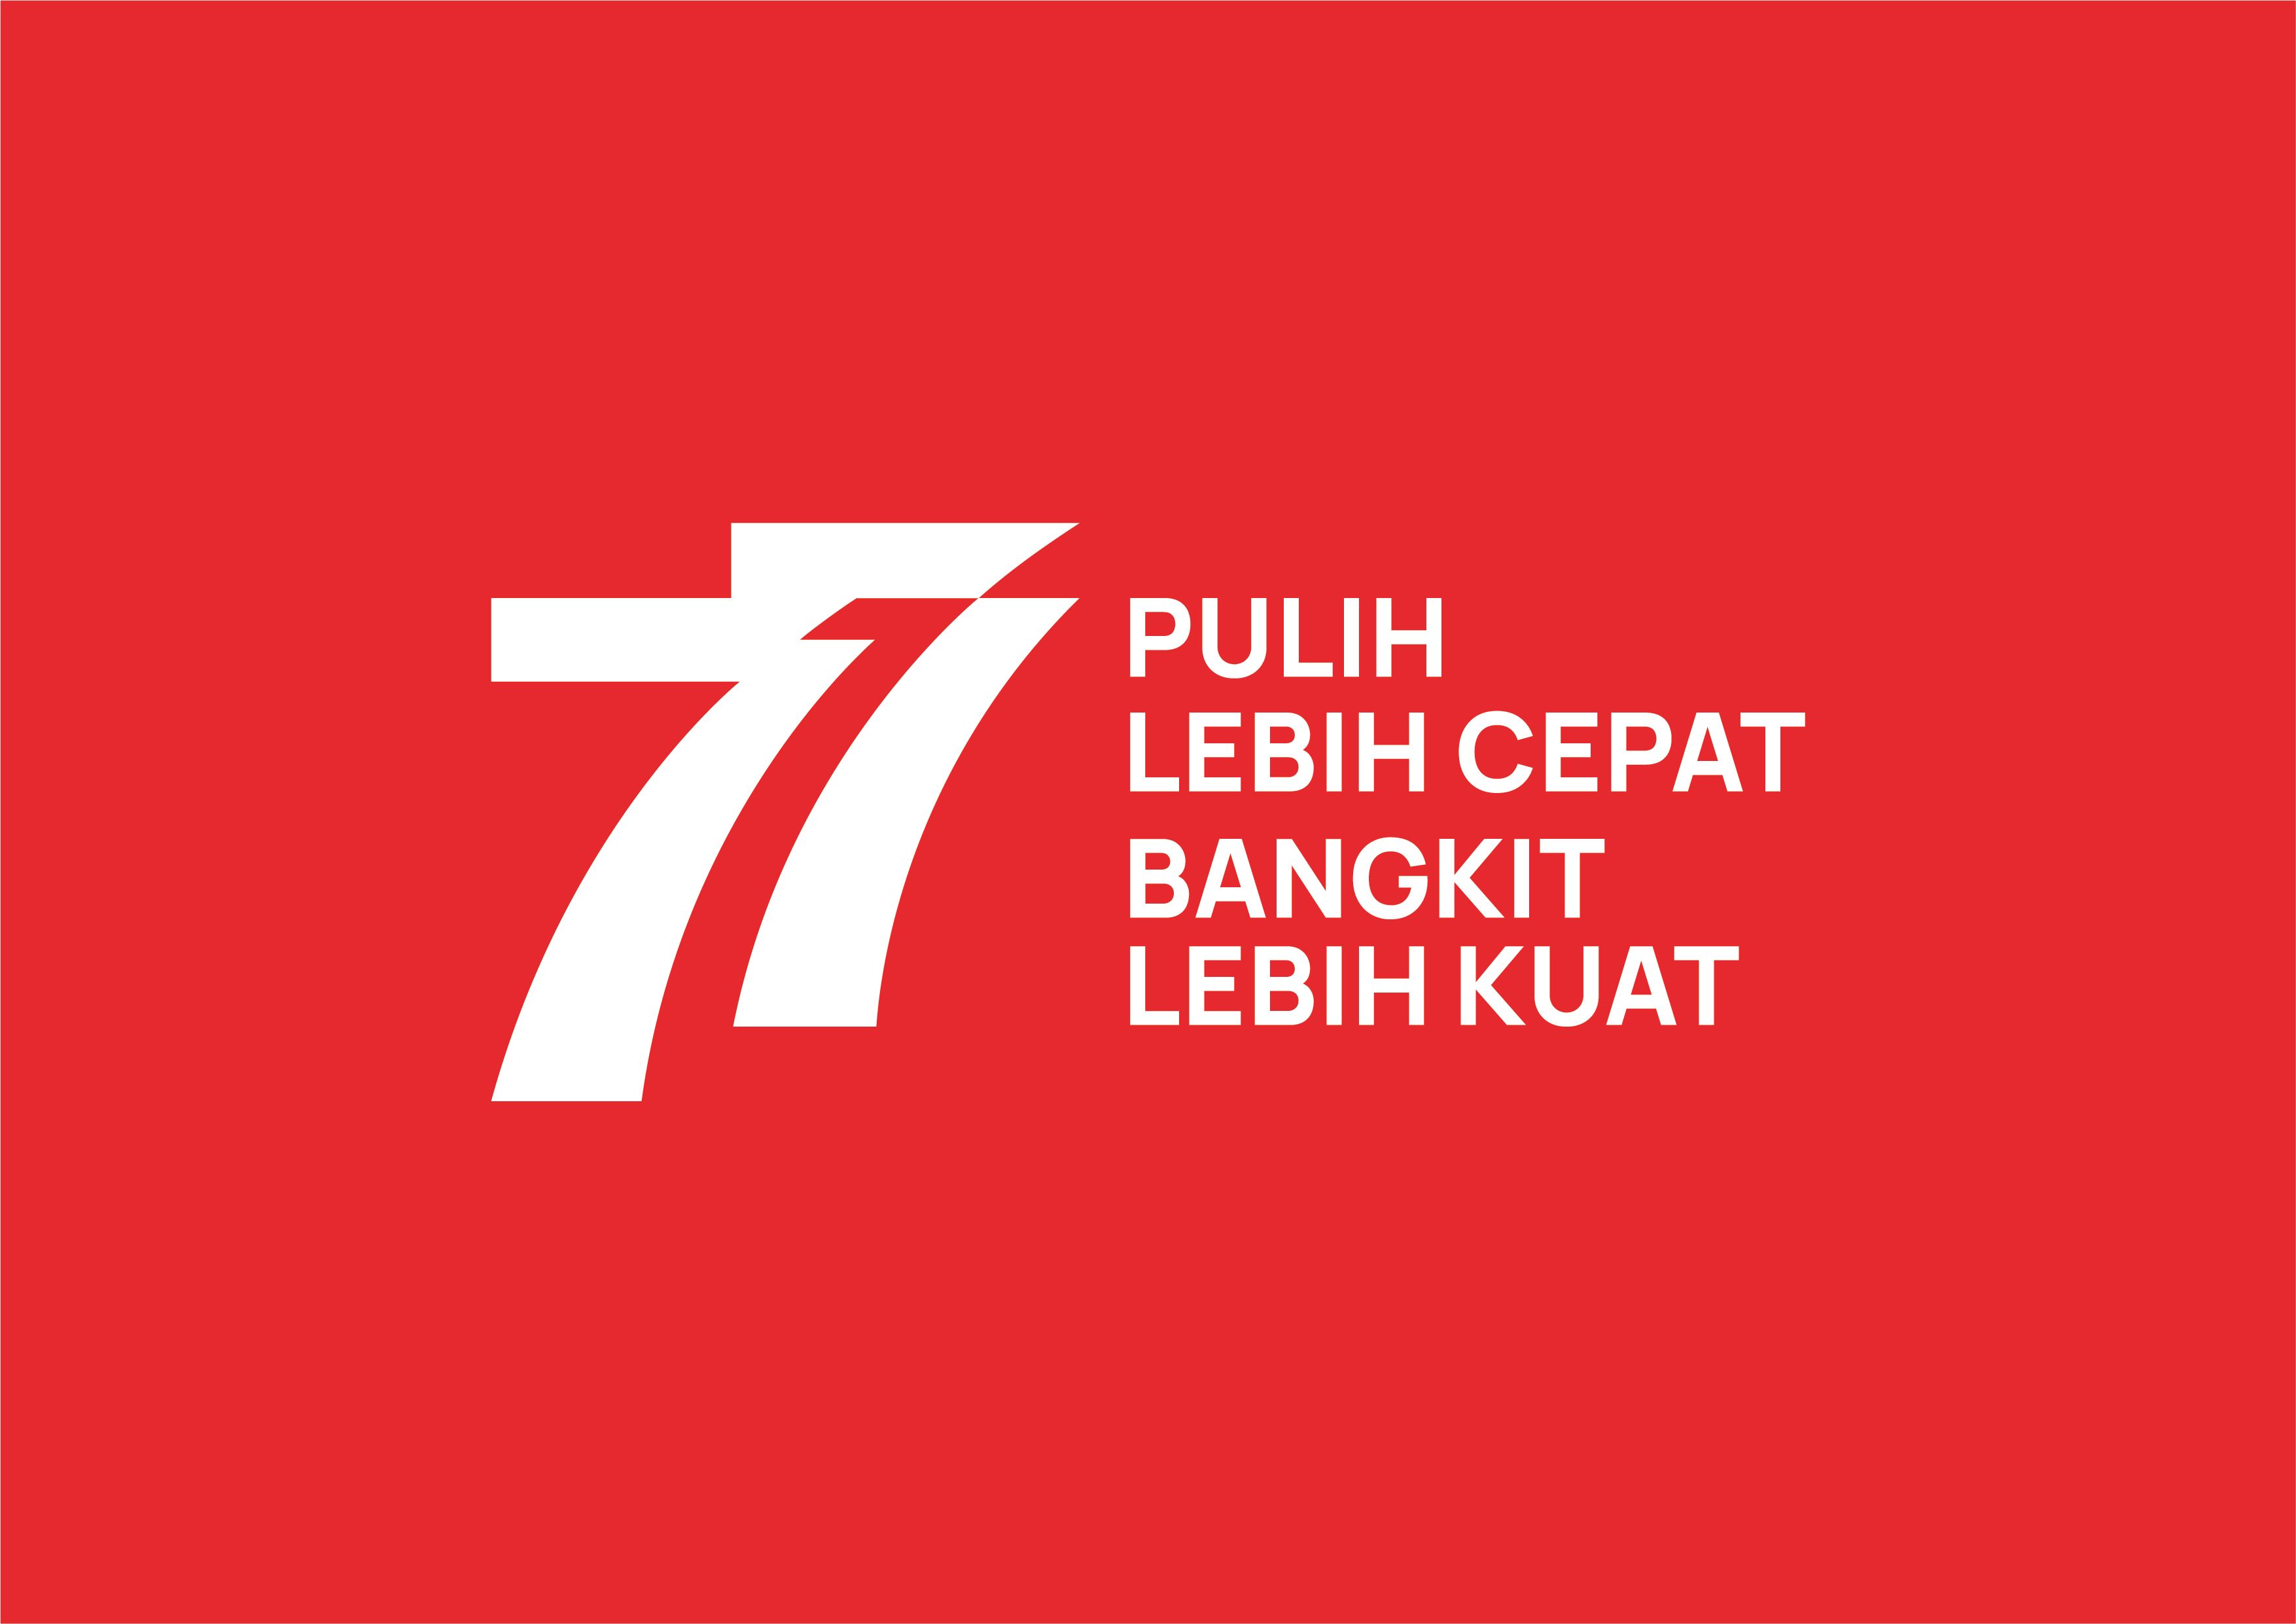 Tema dan Logo HUT RI Ke 77 Resmi dari Pemerintah lengkap dengan Filosofinya untuk 17 Agustus 2022